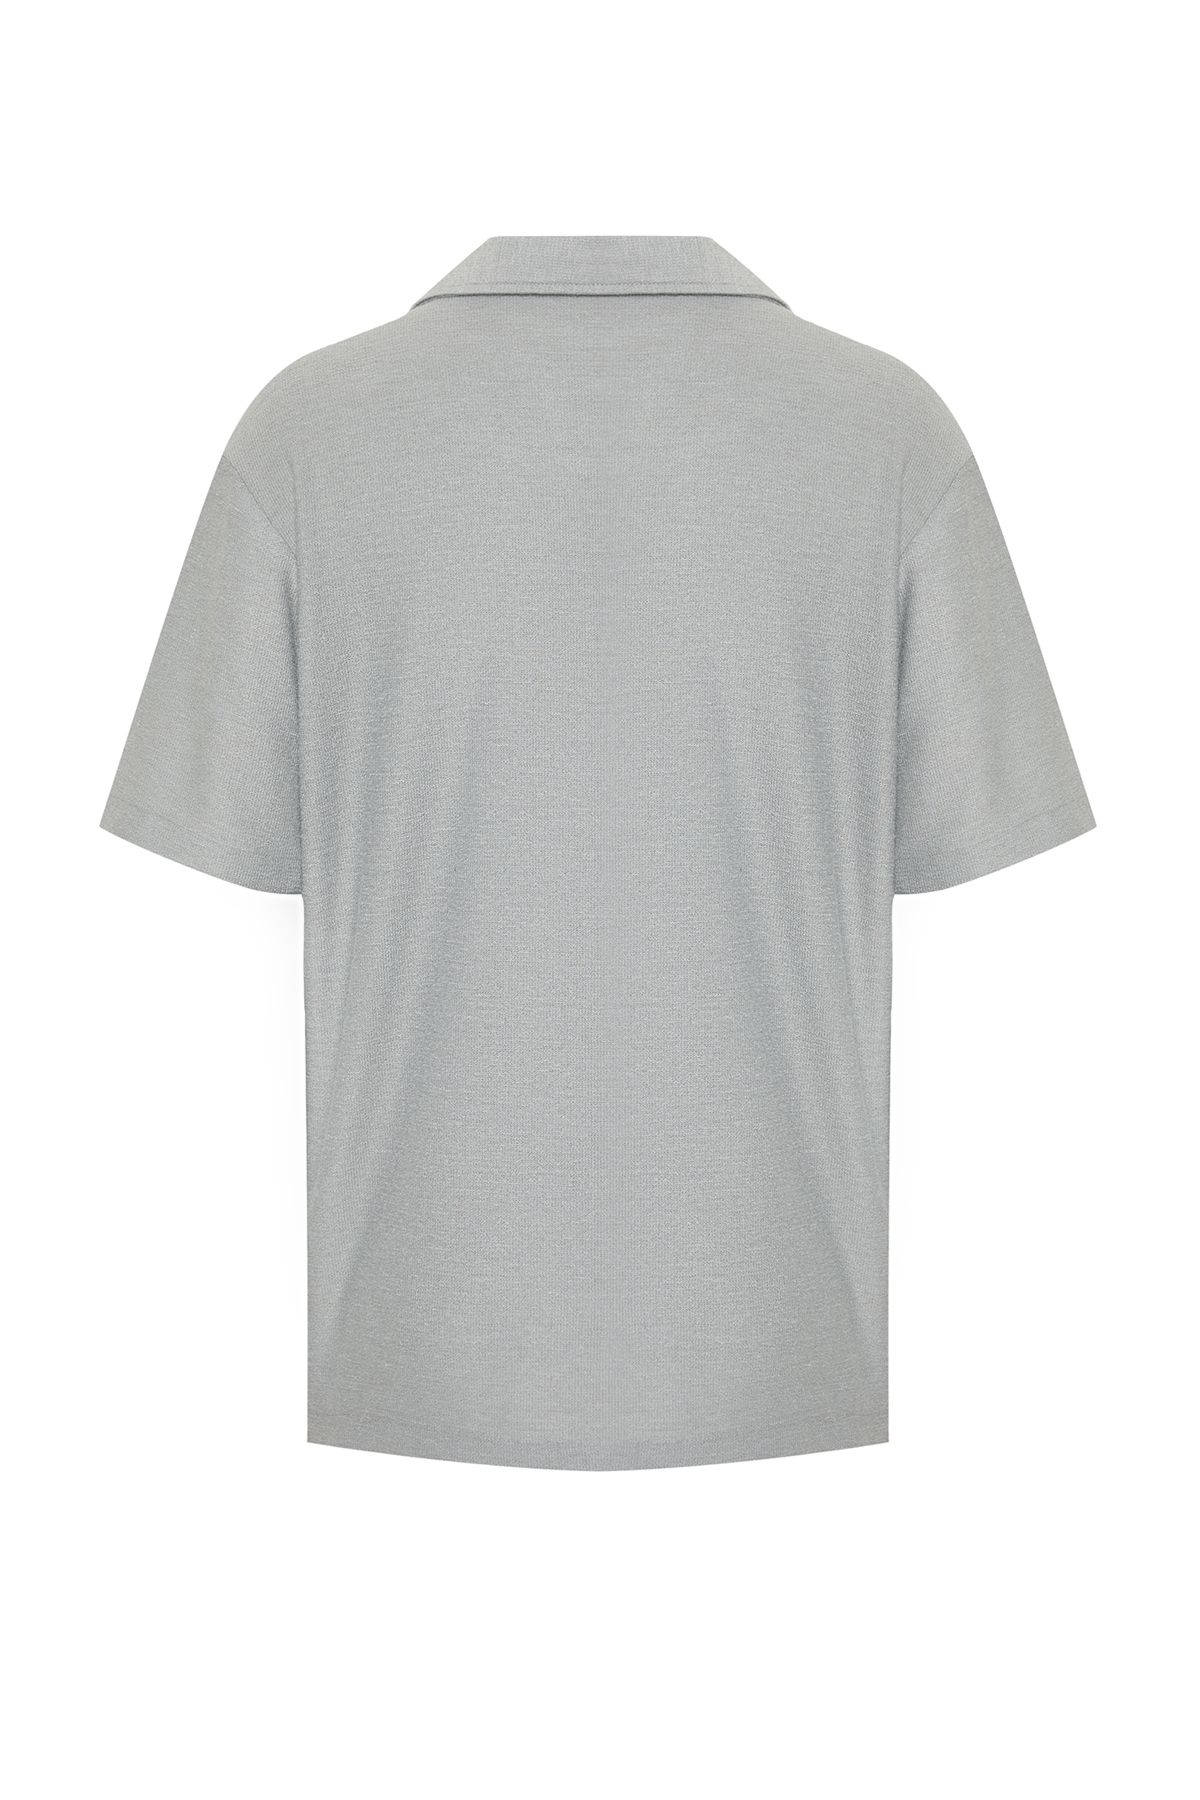 trendyol-man-mens-plain-short-relaxed-shirt